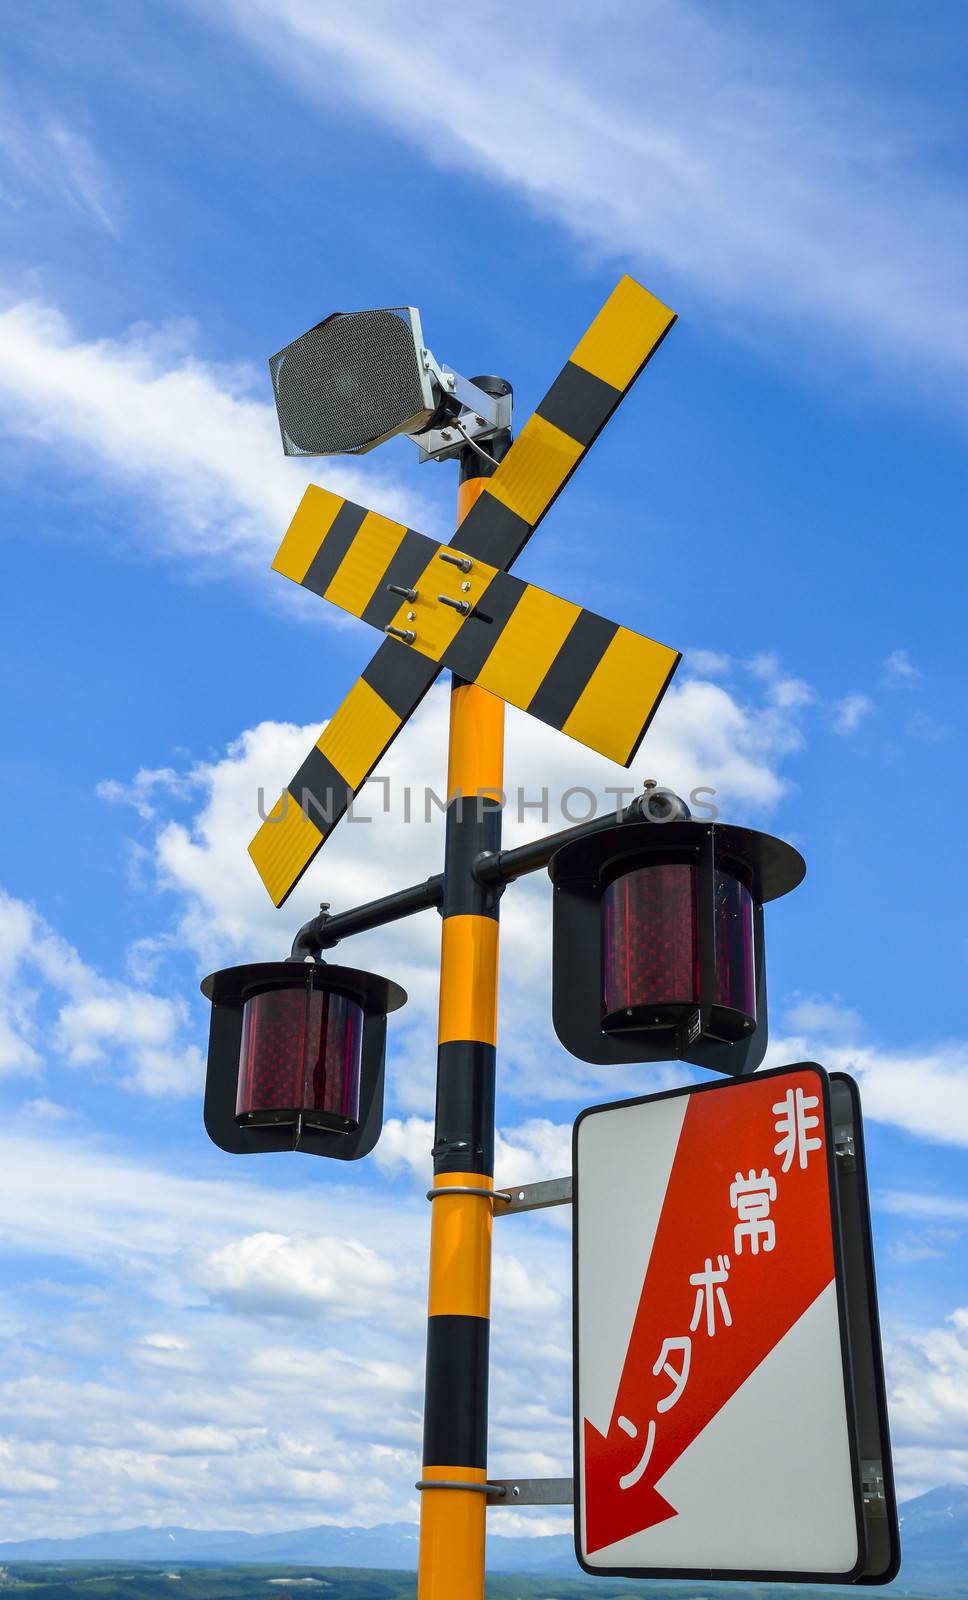 Train Caution sign in Japan by gjeerawut